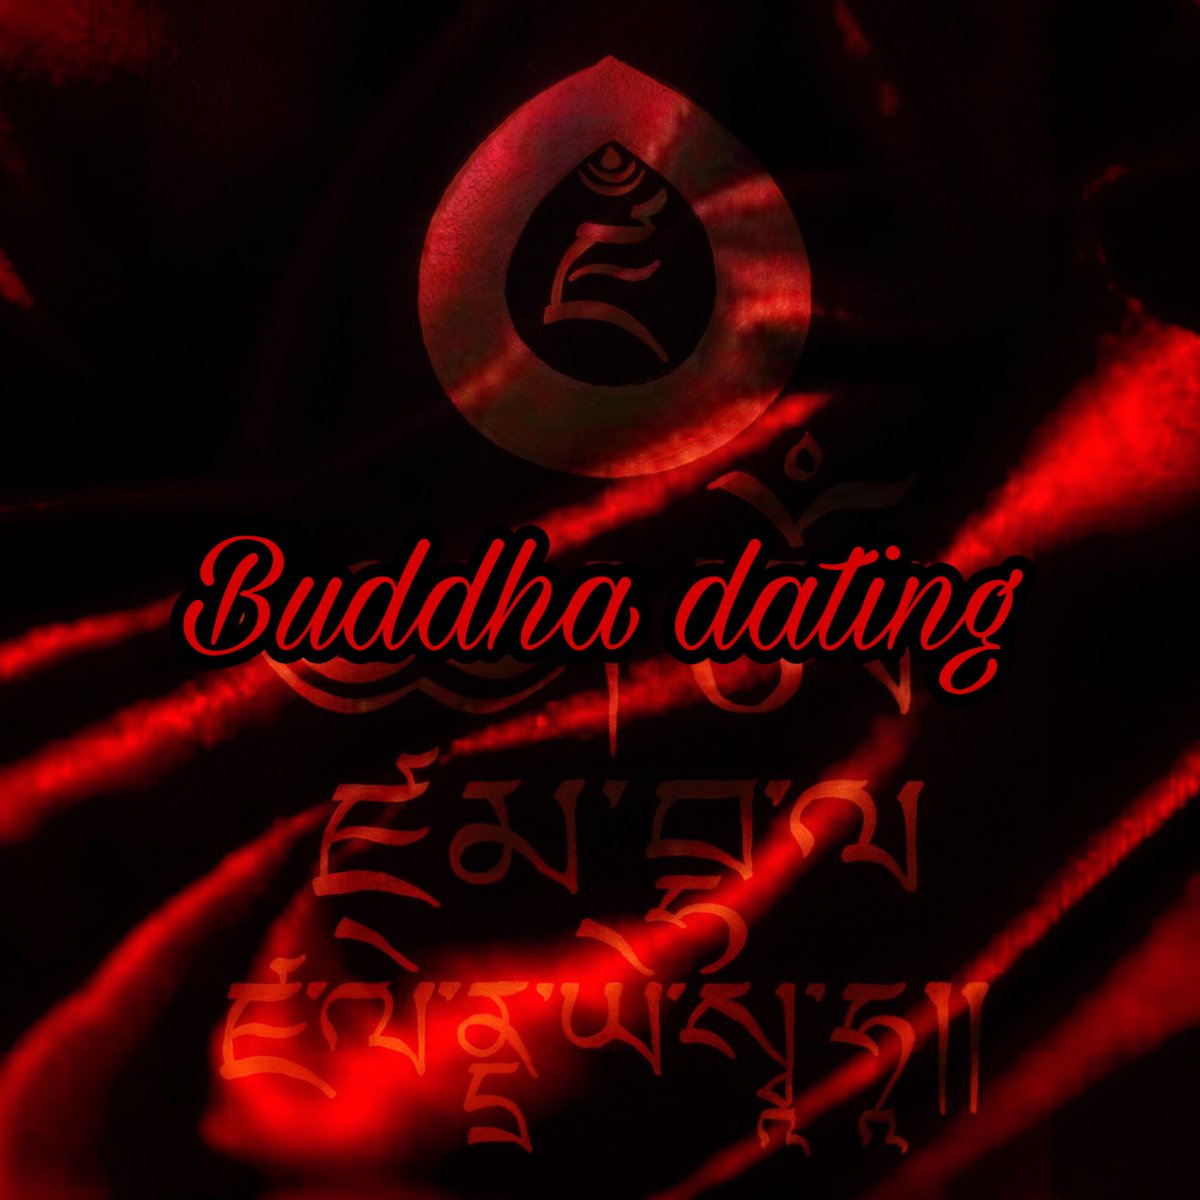 Buddha dating